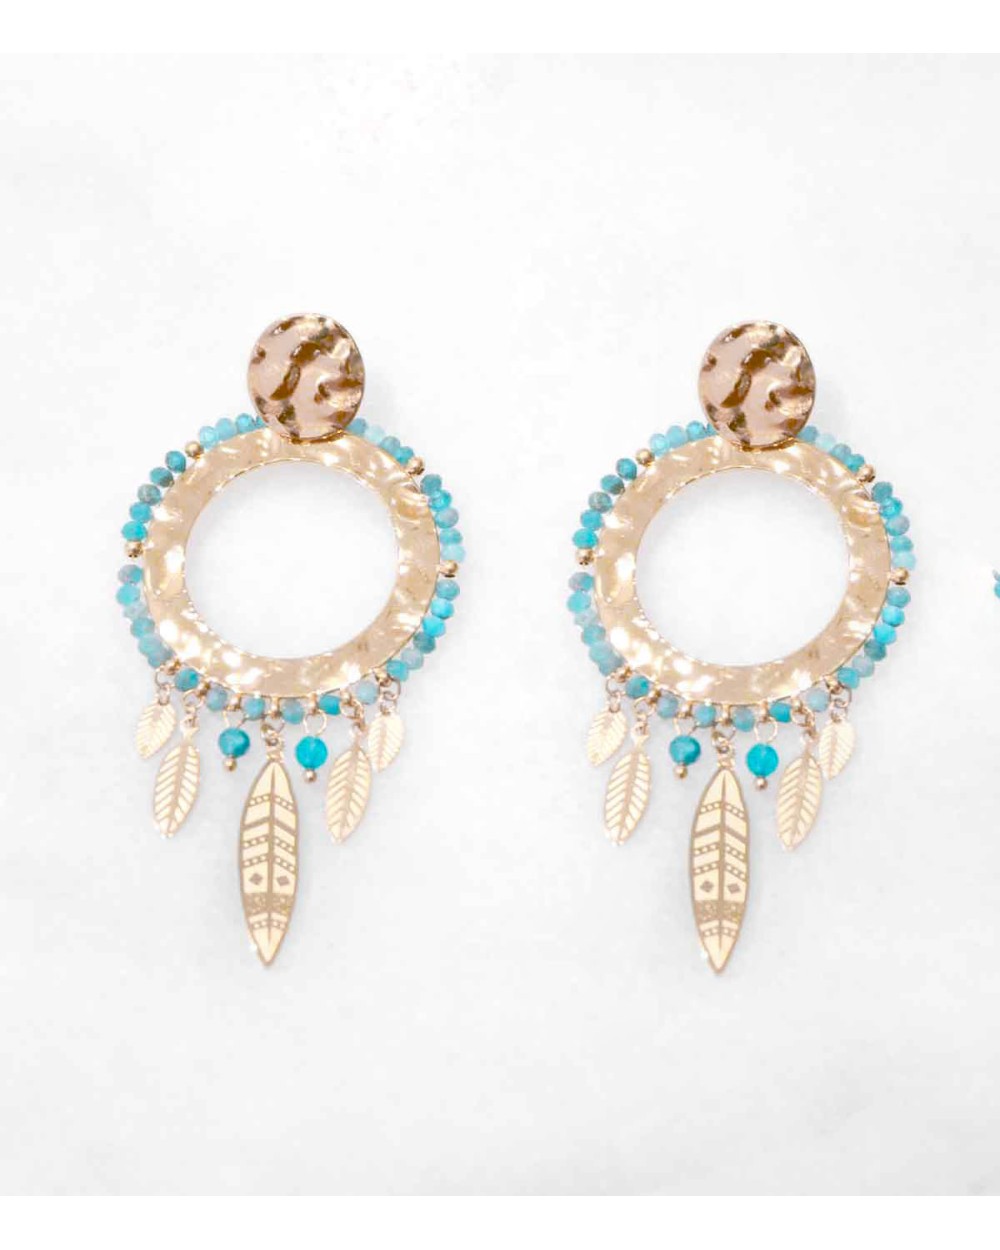 boucles d'oreilles pendantes en acier inoxydable doré à l'or fin 18k avec perles en pierres naturelles African turquoise